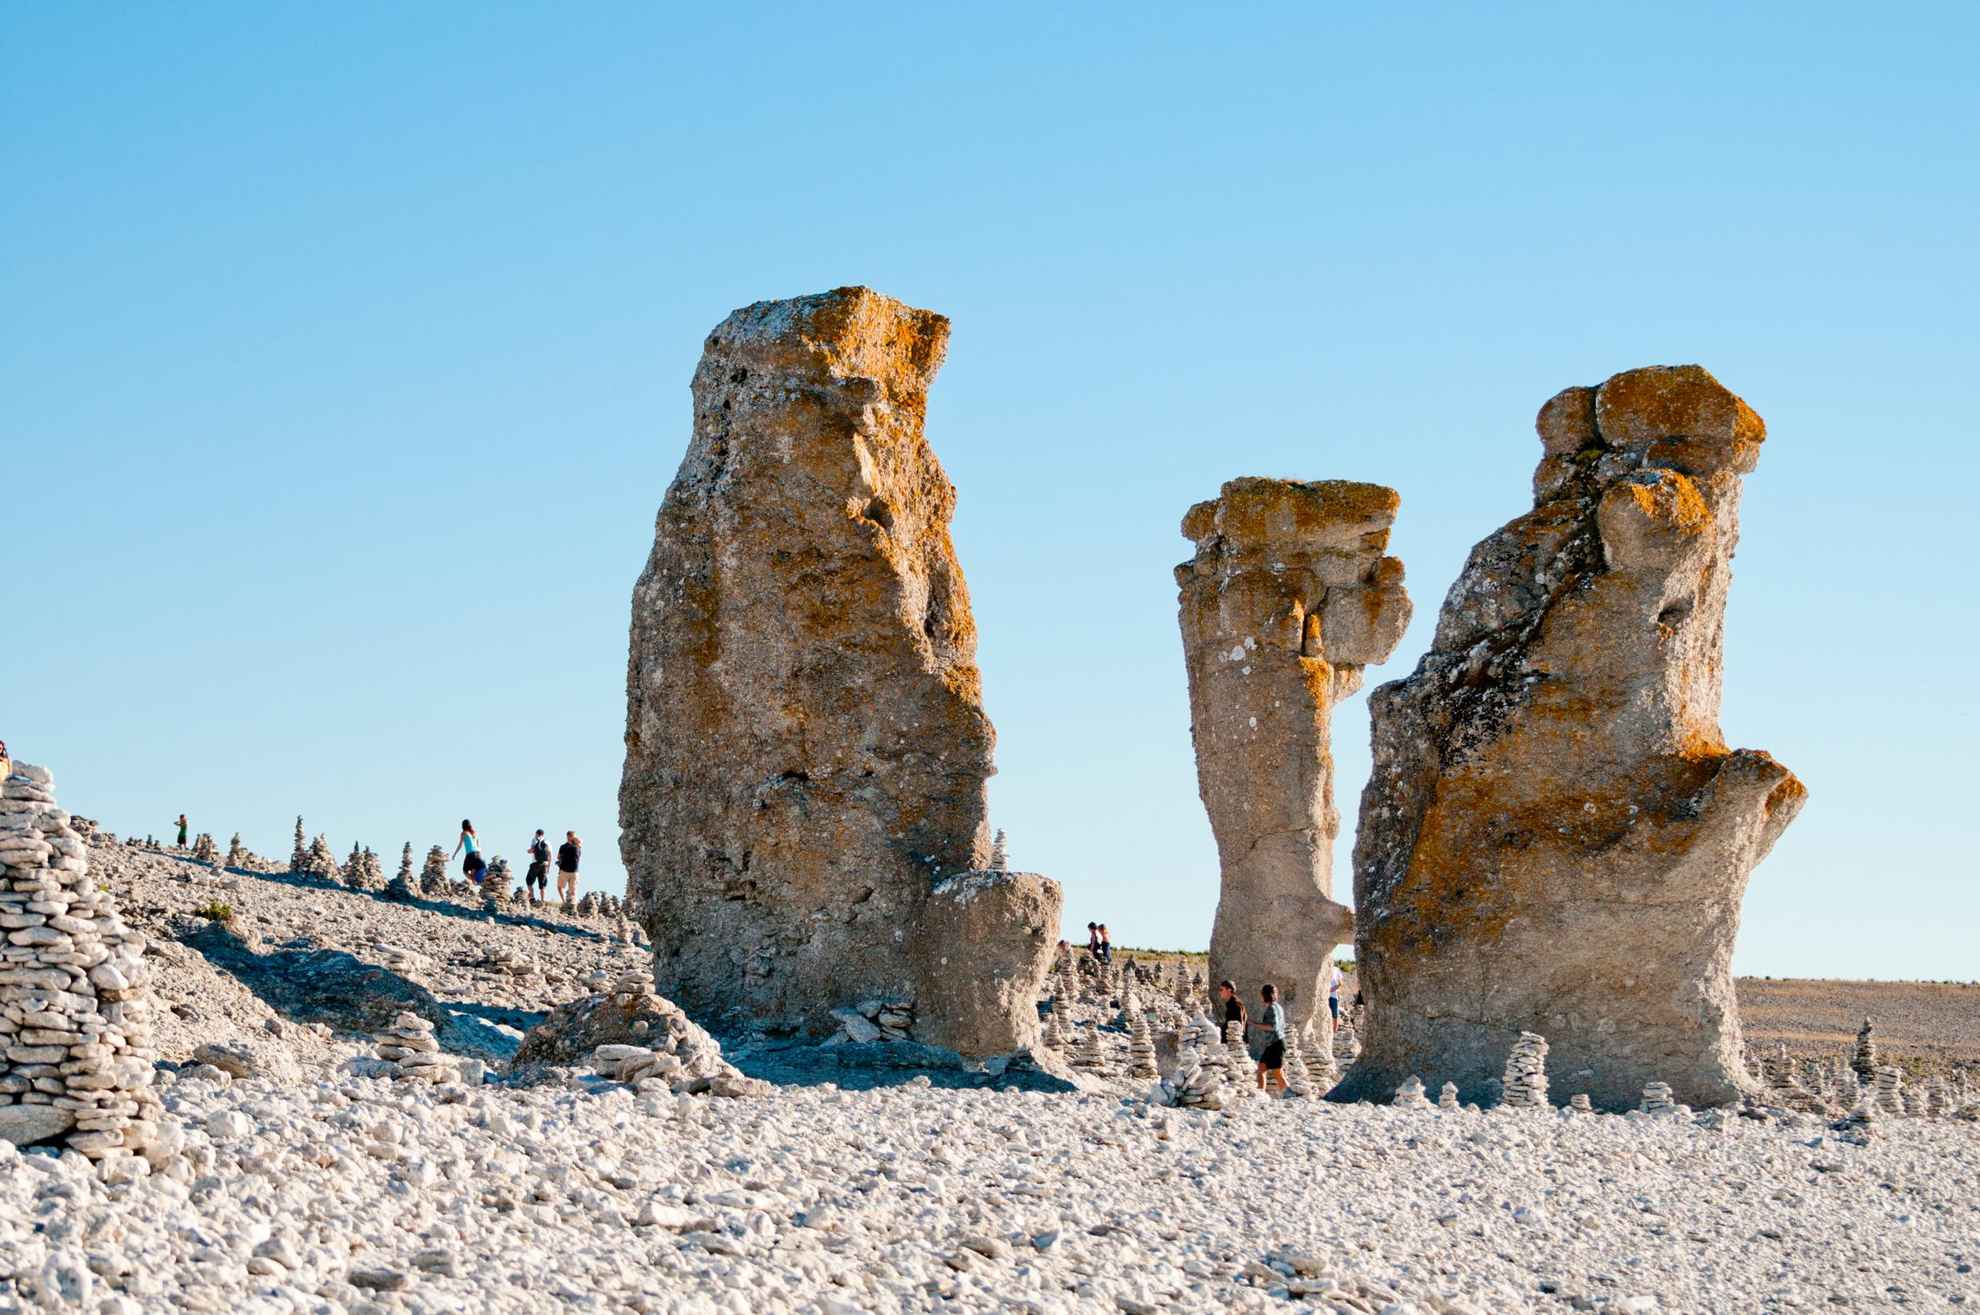 Kalkstenen monolieten op een rotsstrand op Gotland, met een paar mensen op de achtergrond.